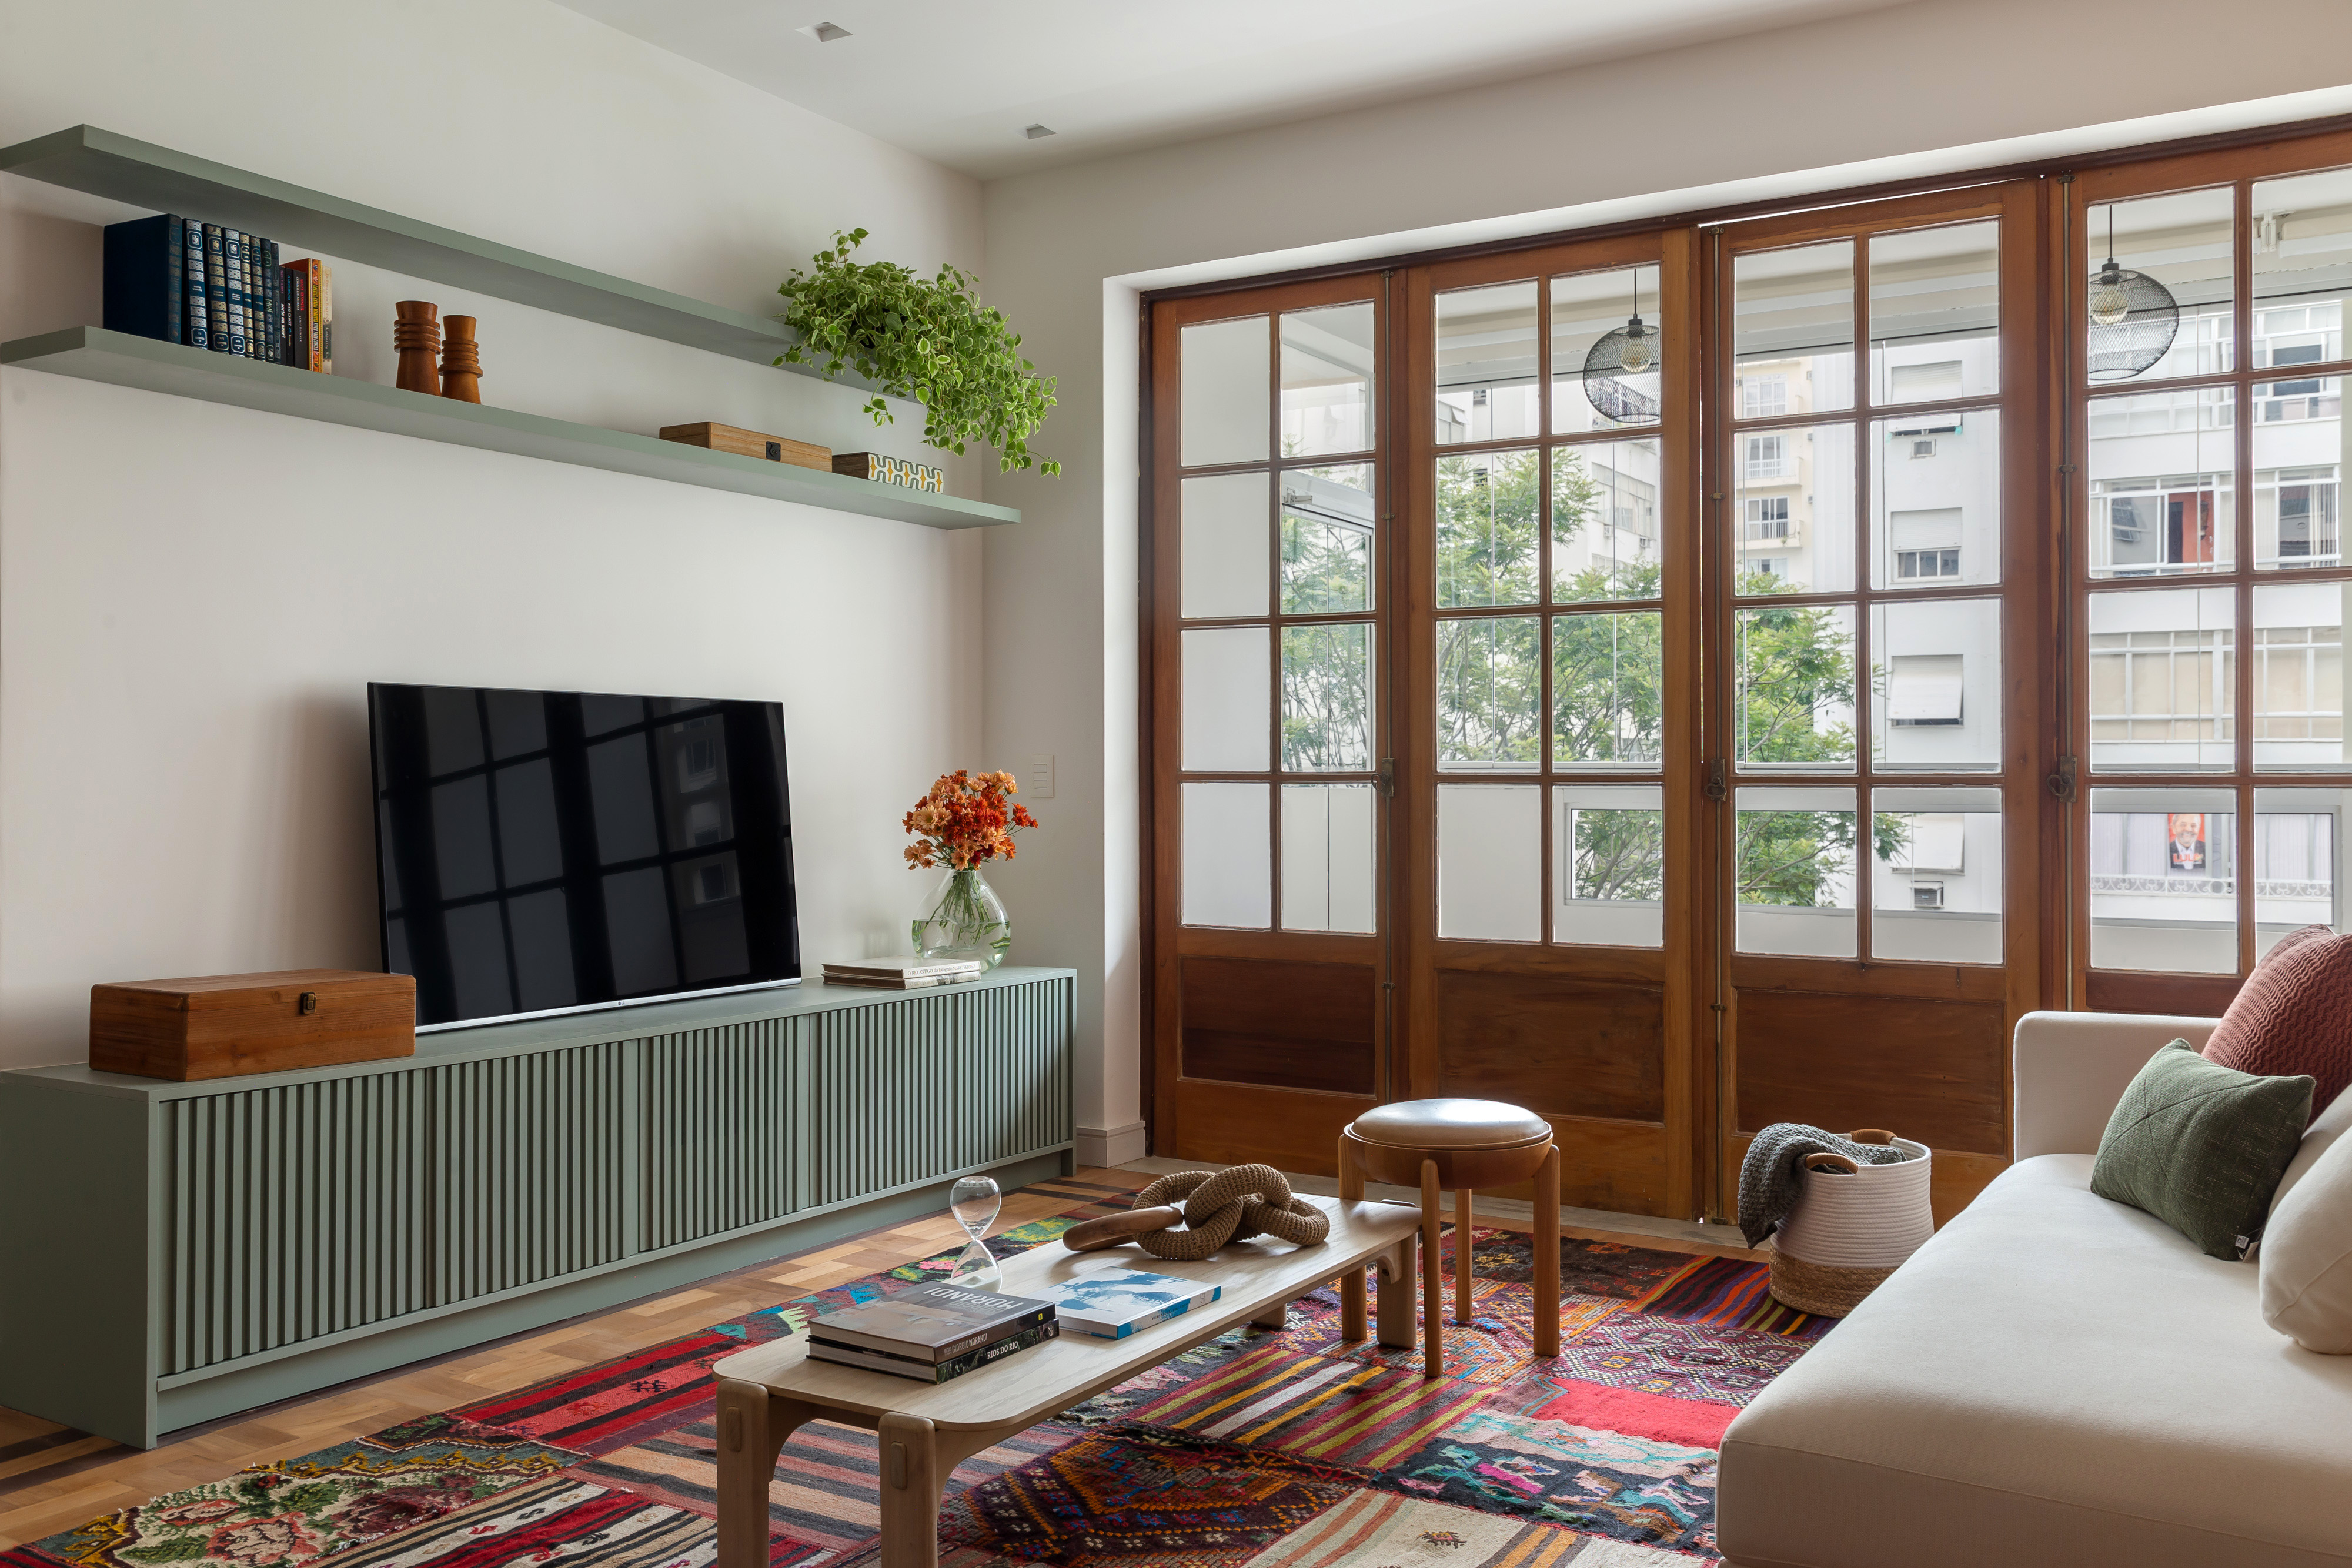 Sala de tv com parede de tijolinho, rack verde claro, tapete colorido, mesa de centro em madeira e porta para varanda em madeira